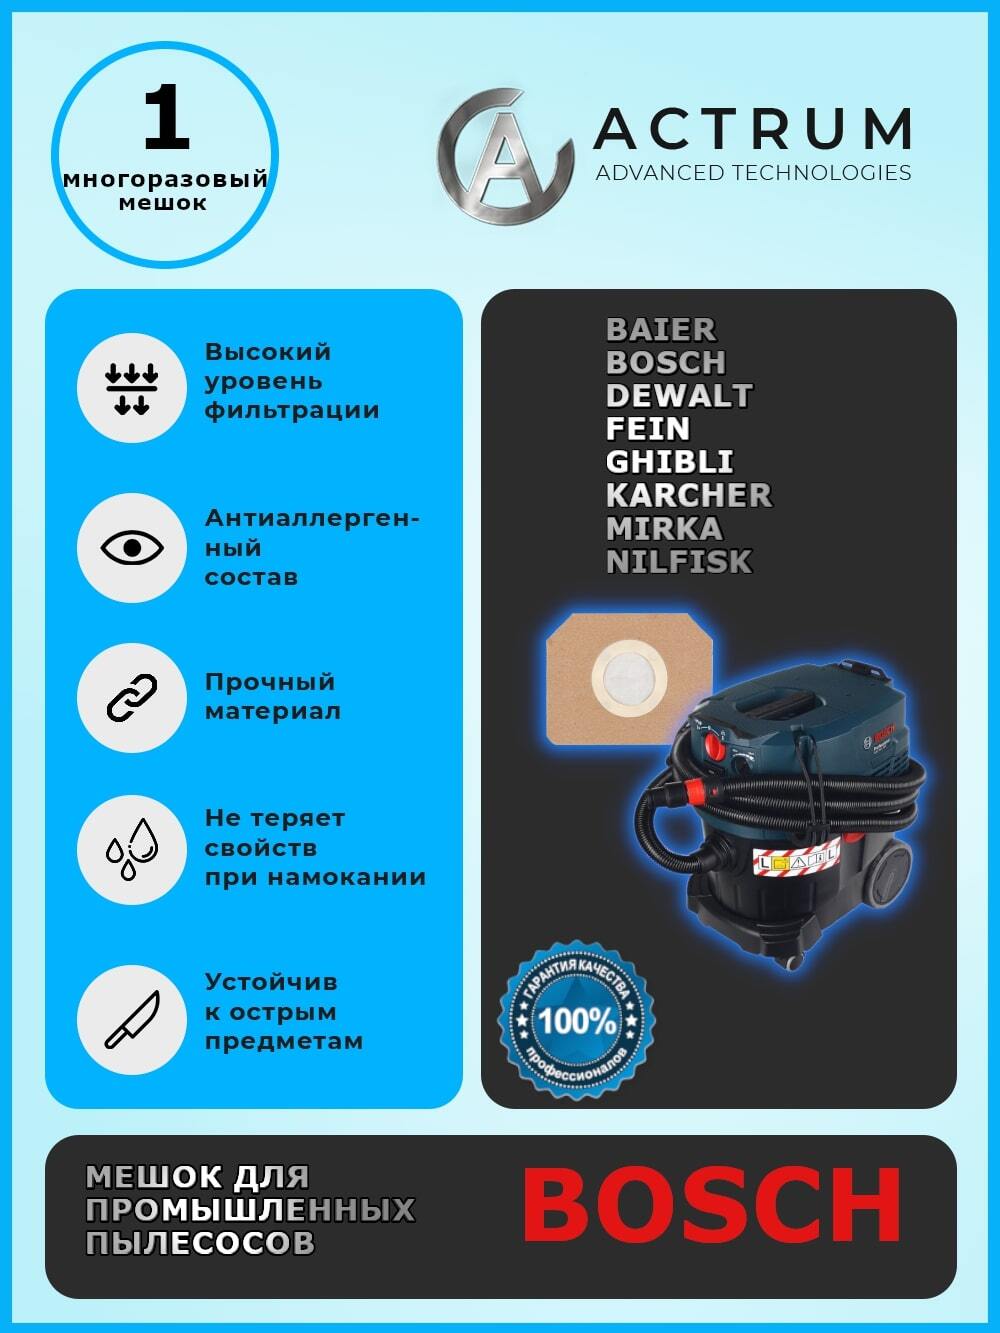 Пылесборник АК032M для промышленных пылесосов BAIER, BOSCH, DEWALT, GHIBLI, KARCHER автомойка karcher k4 compact подарок